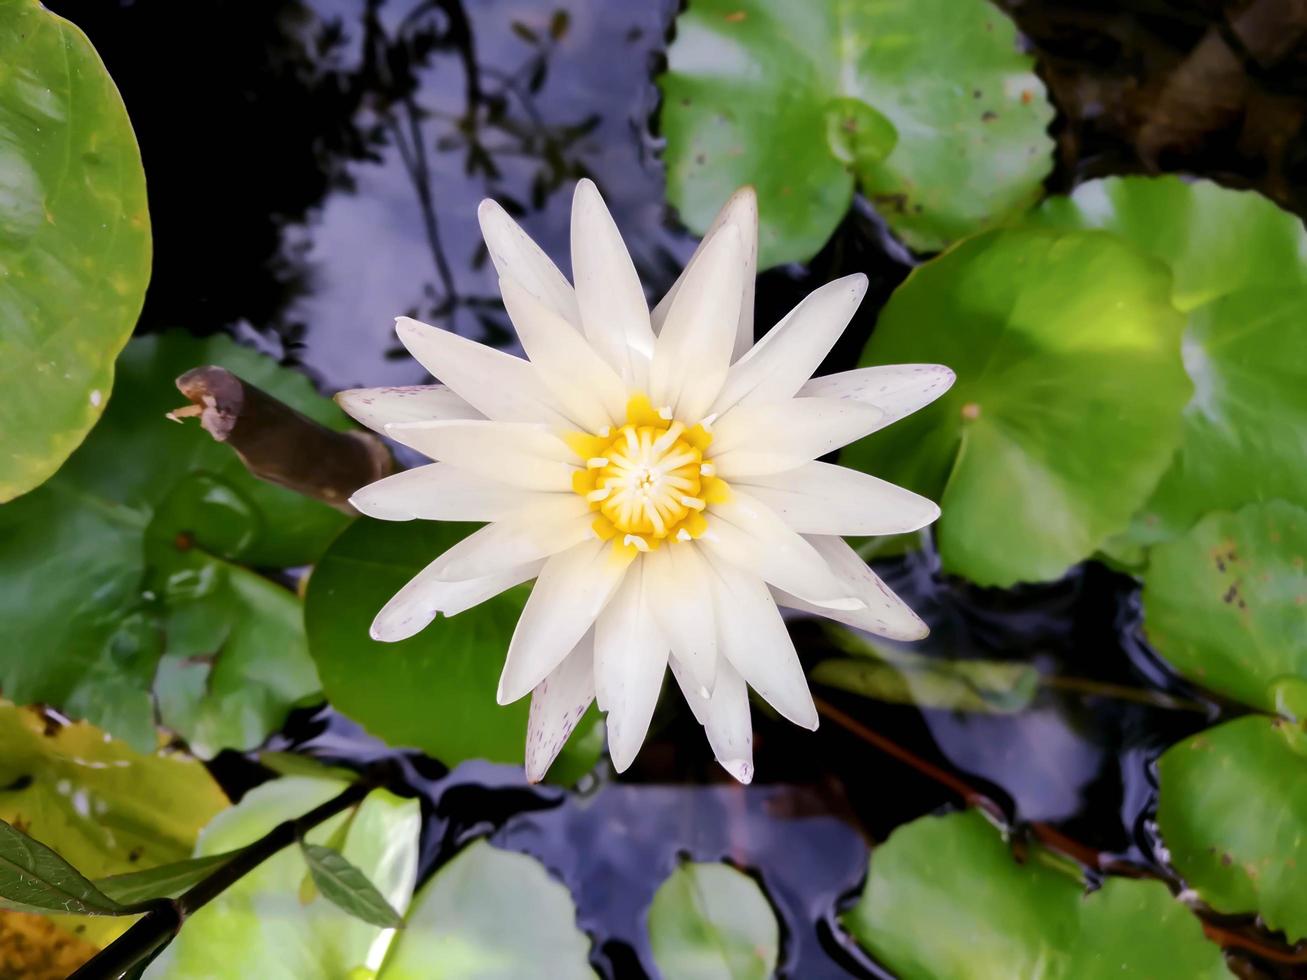 vista superior de la flor de loto blanco que florece en una piscina el día del sol por la mañana. foto